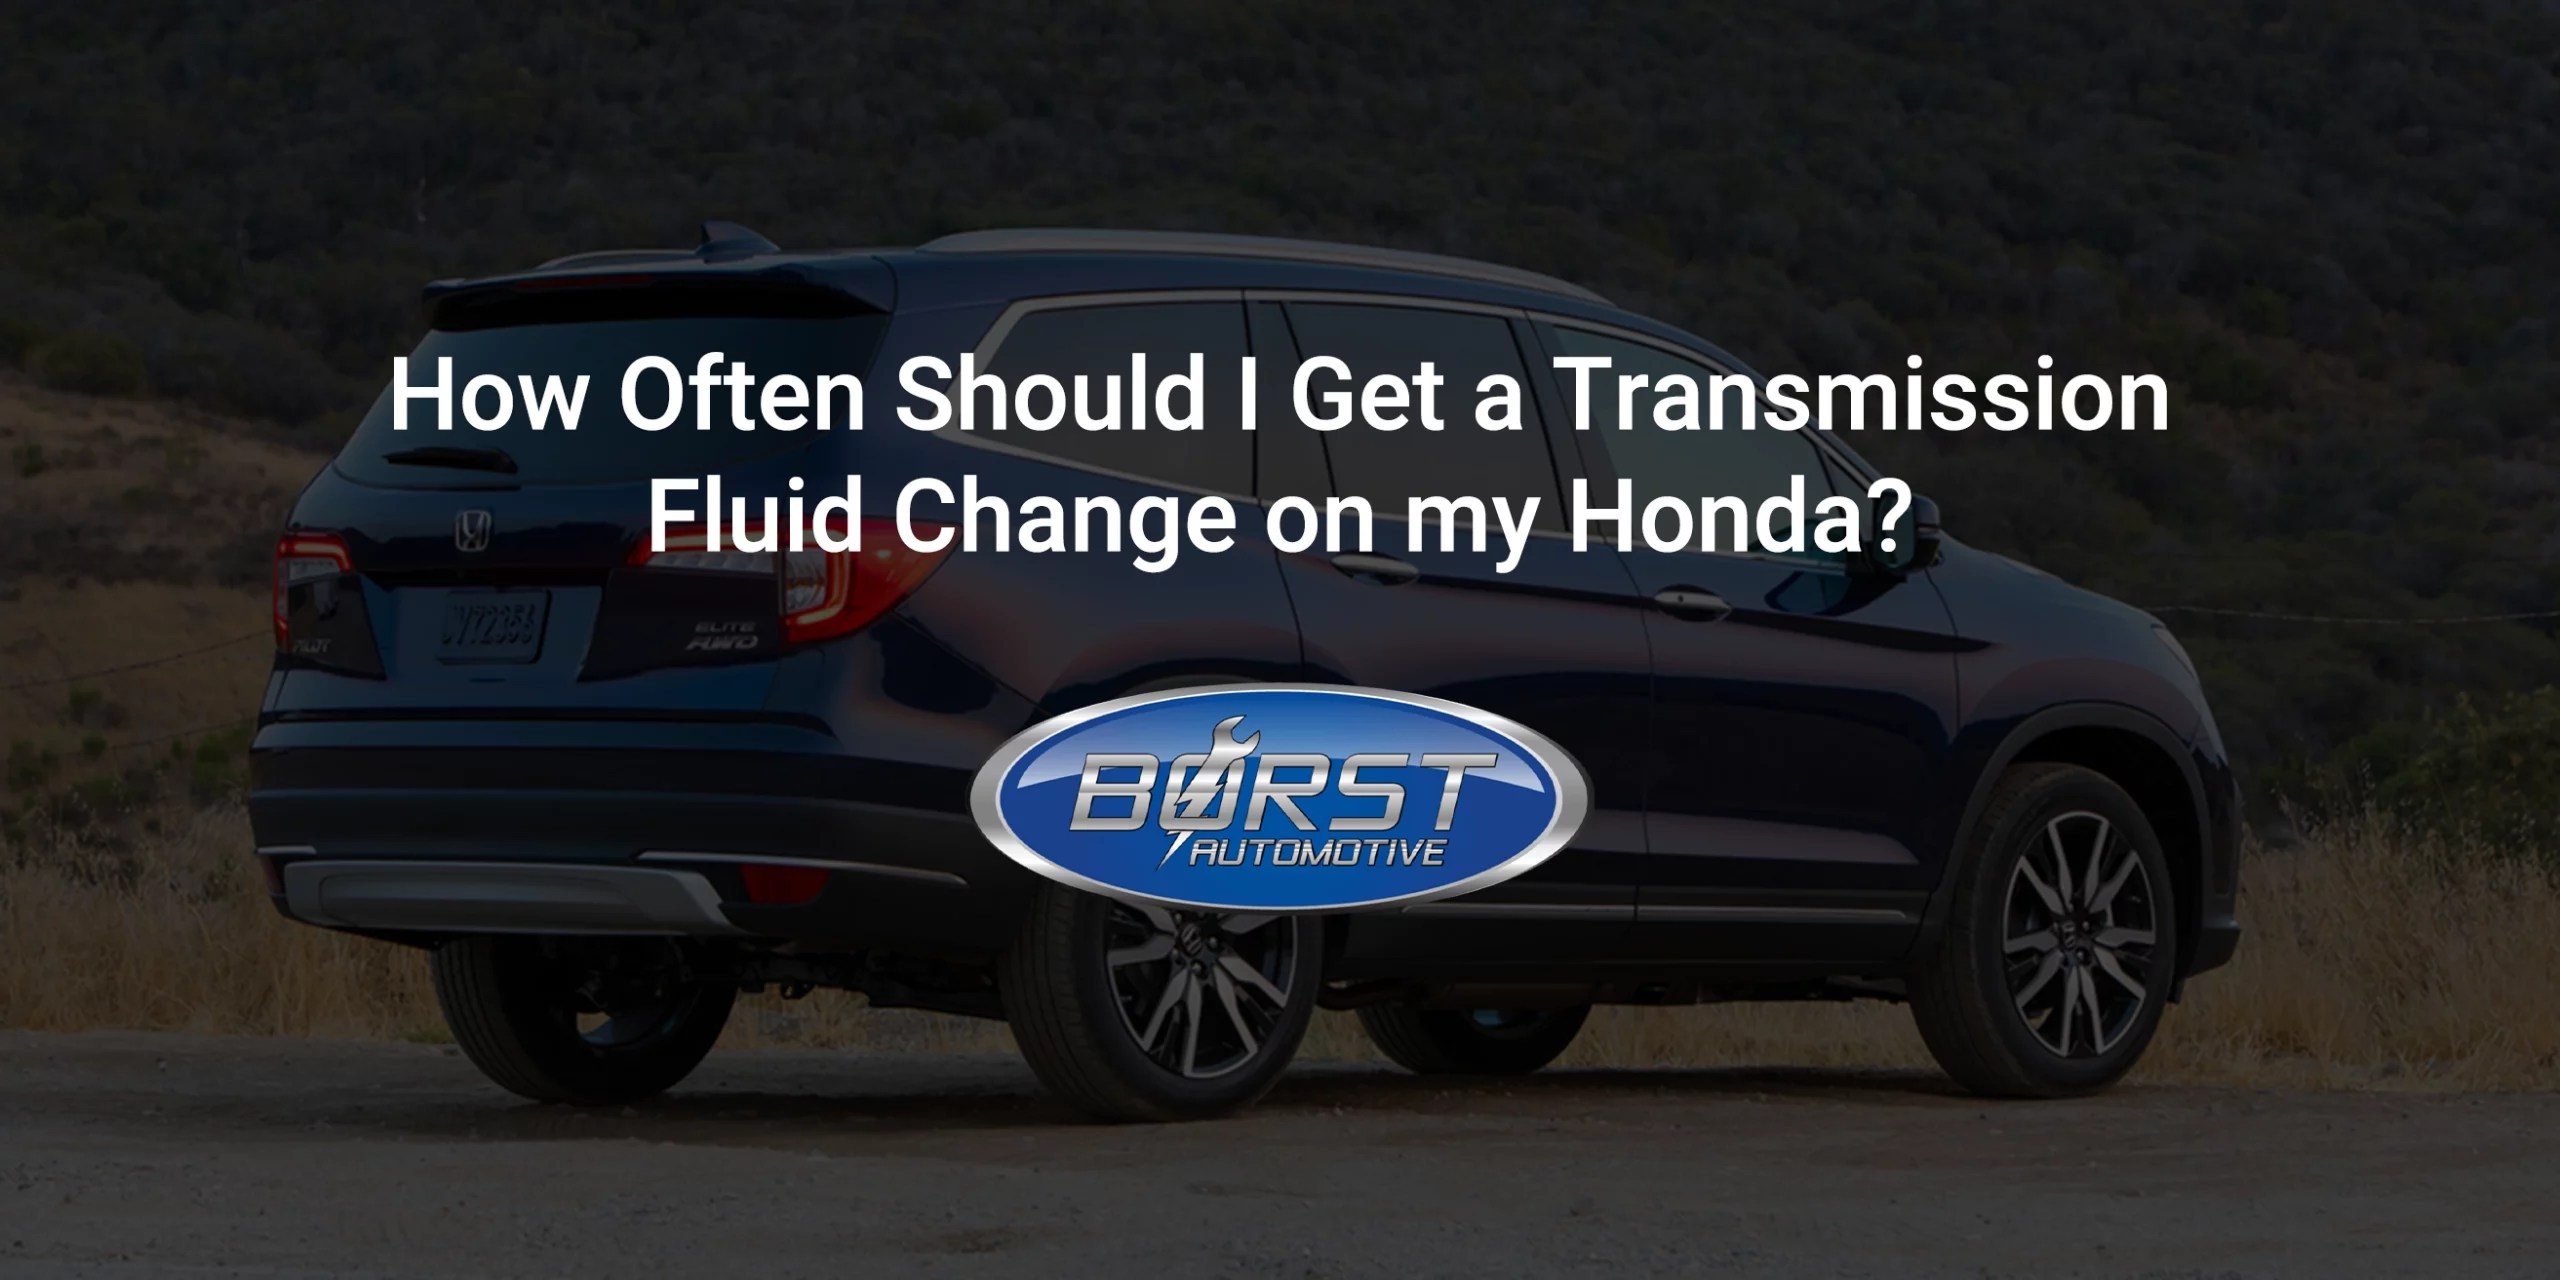 How Often Should I Get a Transmission Fluid Change on My Honda?